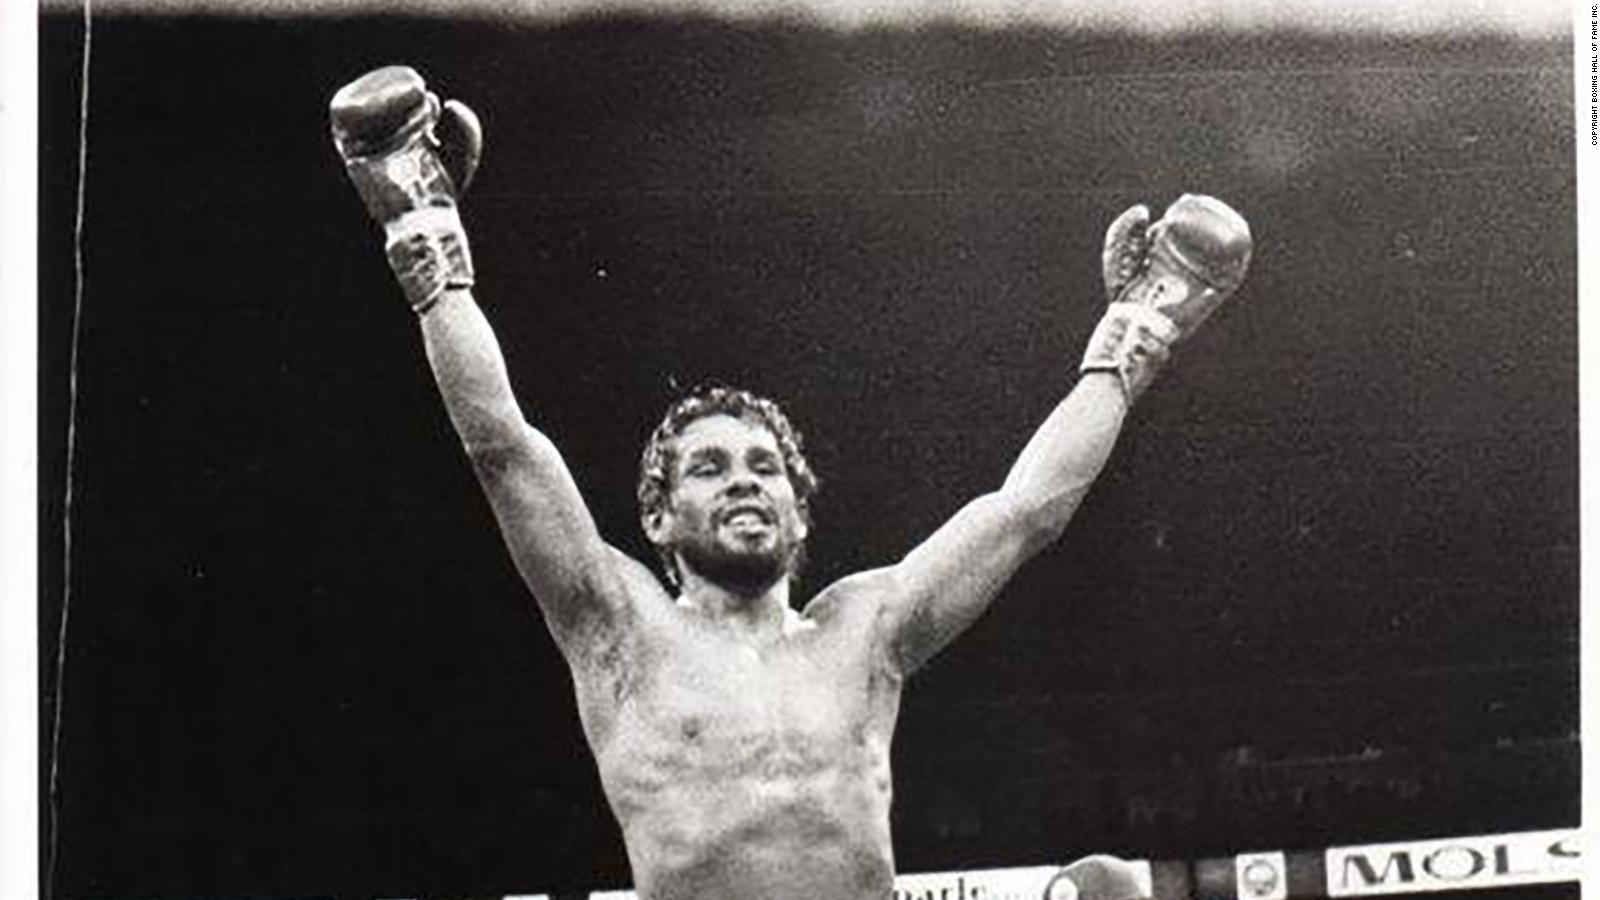 Roberto Duran: 'No más' - The two words that broke boxing great Roberto Duran